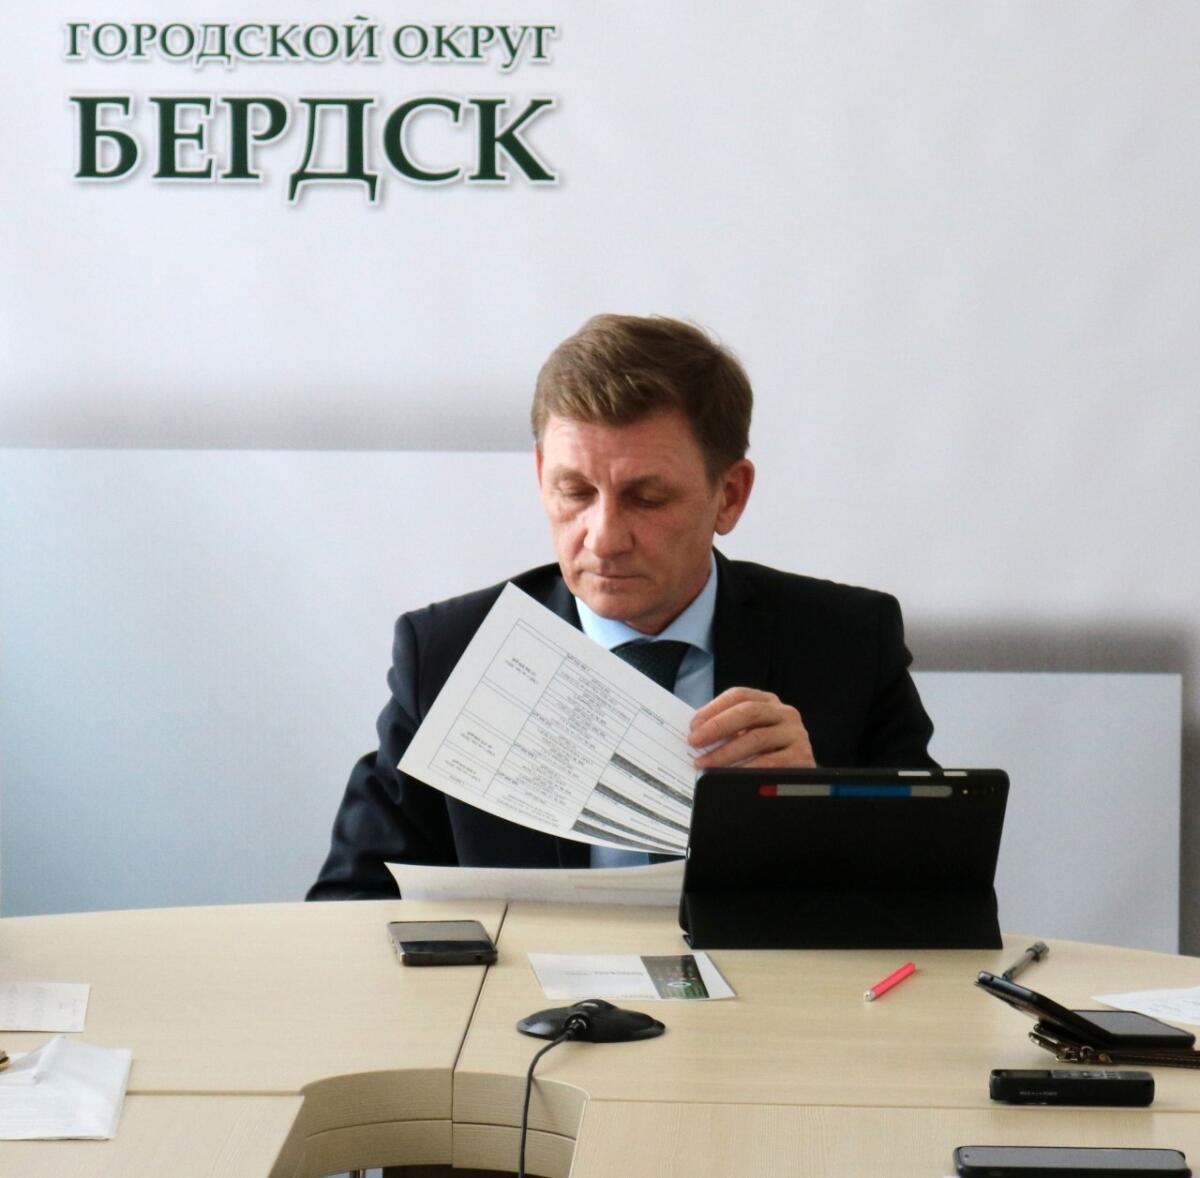 Деятельностью главы Бердска удовлетворены 55% участников опроса правительства региона